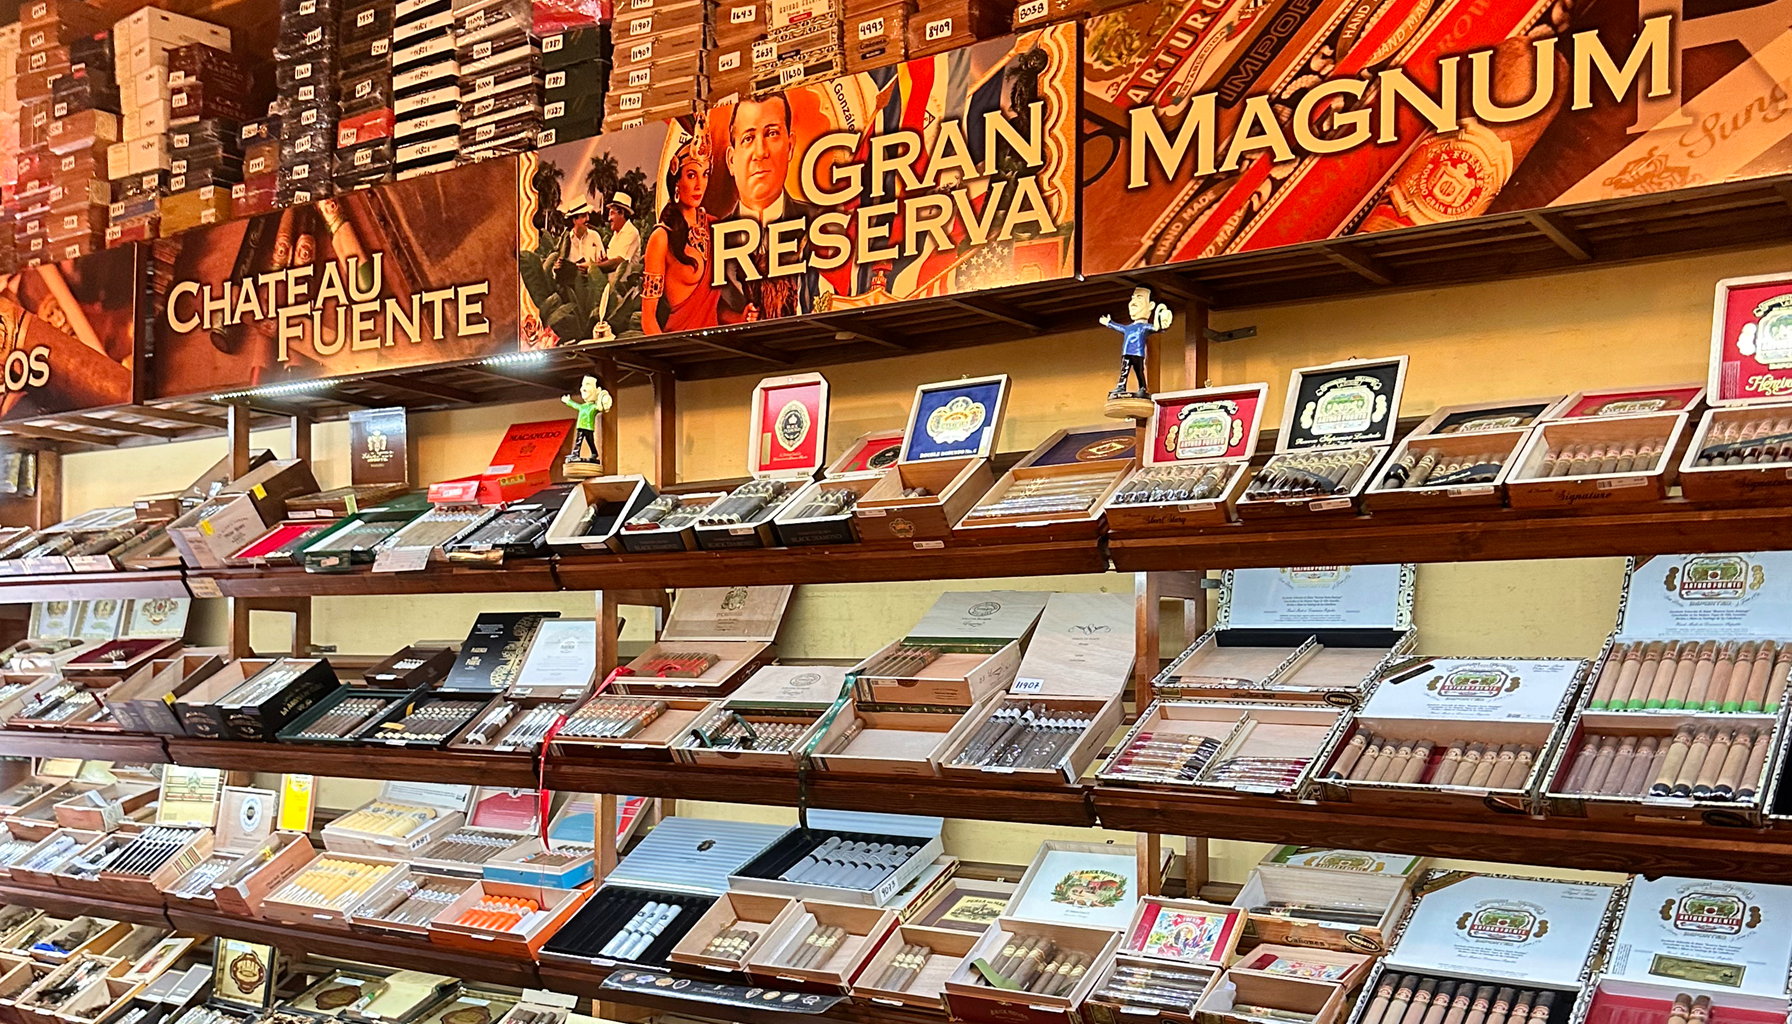 Arturo Fuente's diverse cigar offerings